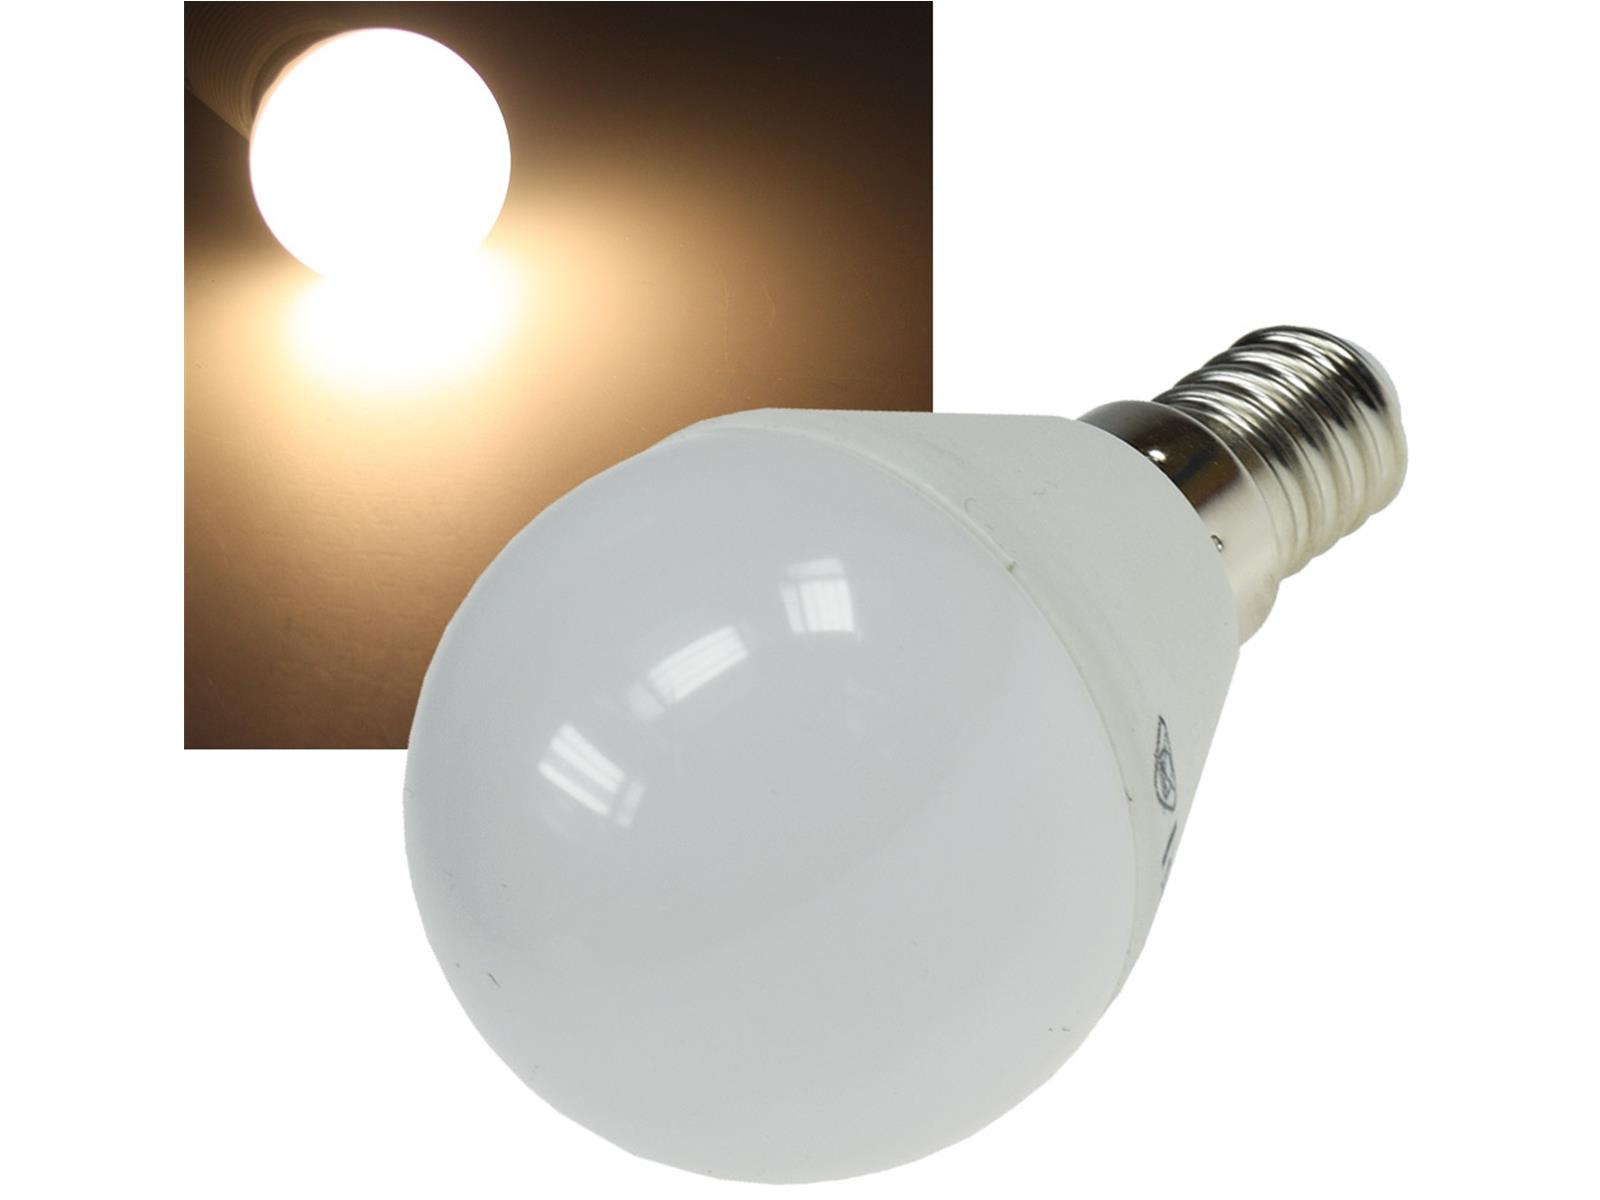 LED Tropfenlampe E14 "T50" warmweiß3000k, 470lm, 230V/5W